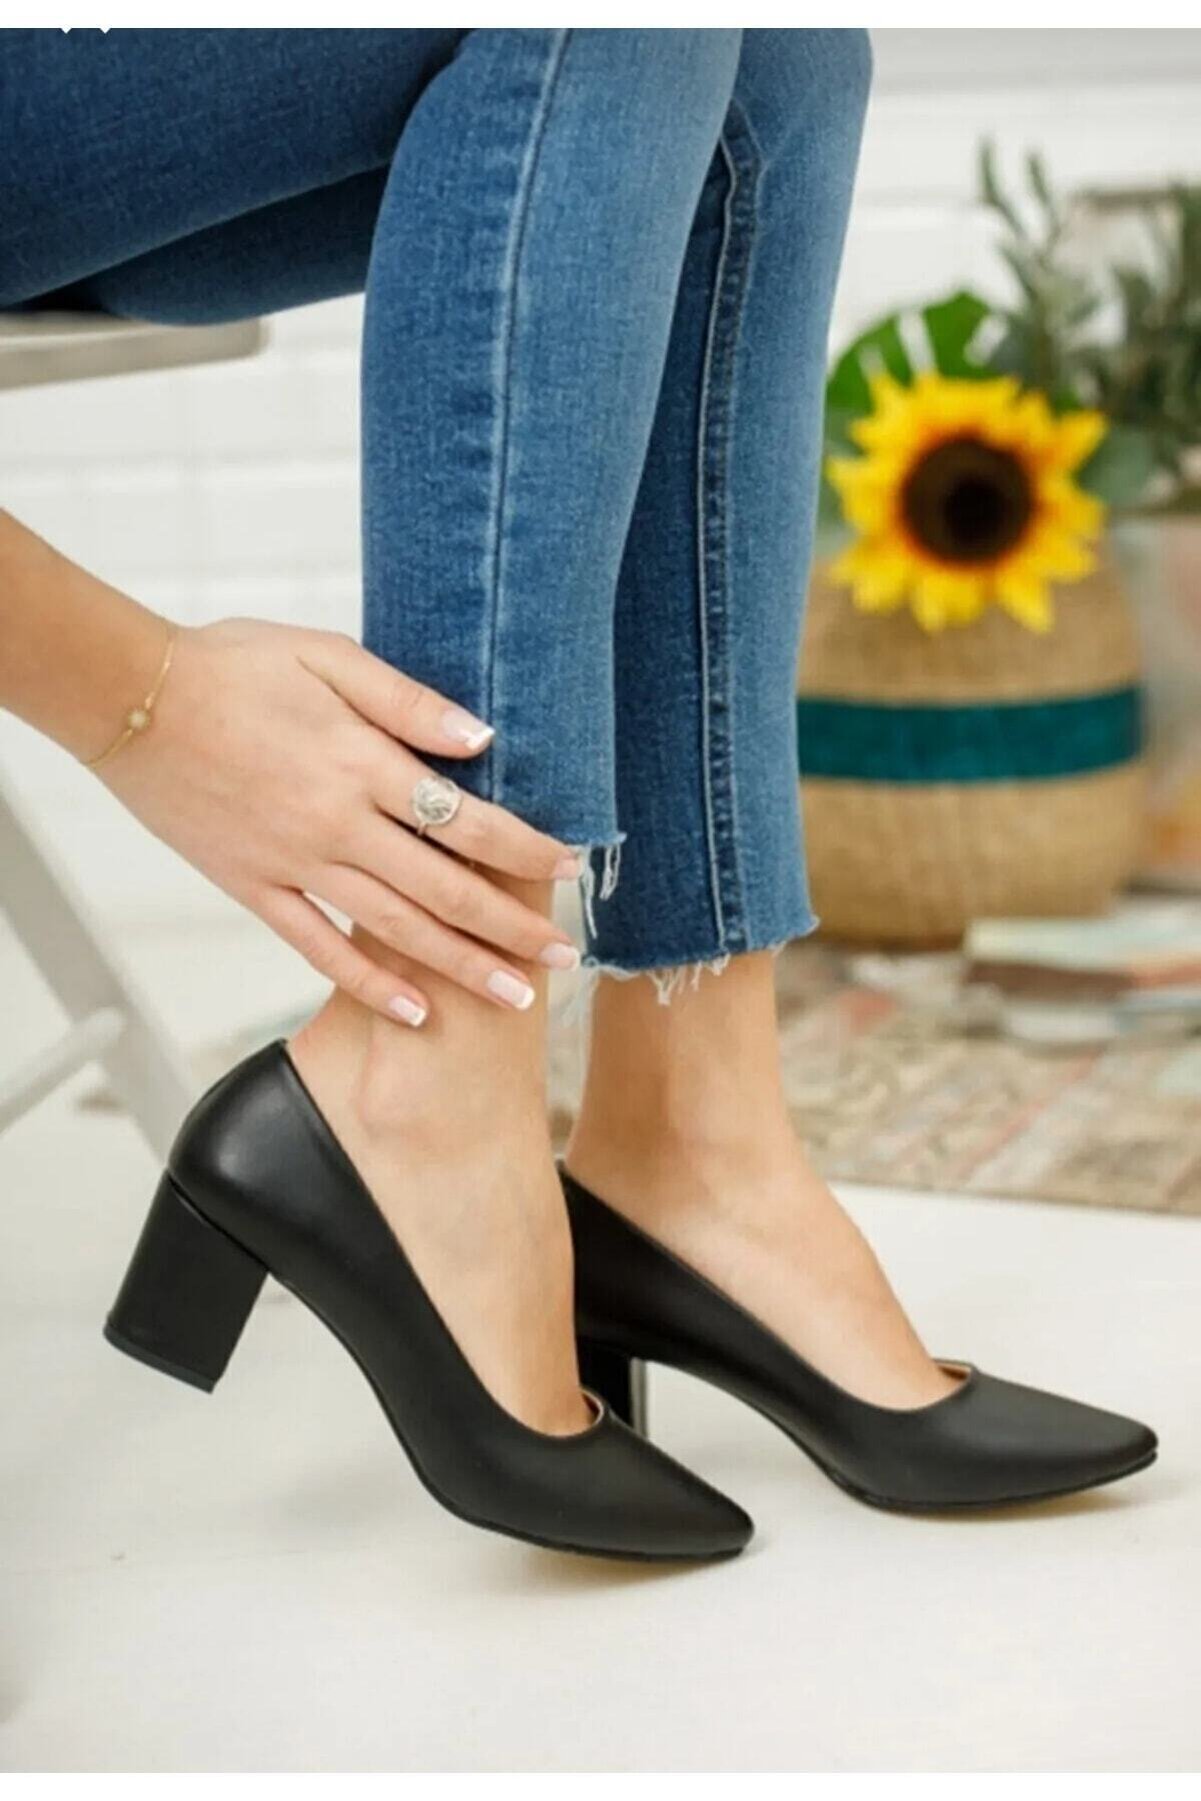 BAY ARMEDON Kadın Ayakkabı Siyah Cilt Kısa Kalın Topuklu Abiye Ayakkabı Klasik Günlük Ayakkabı Cilt 5 Cm